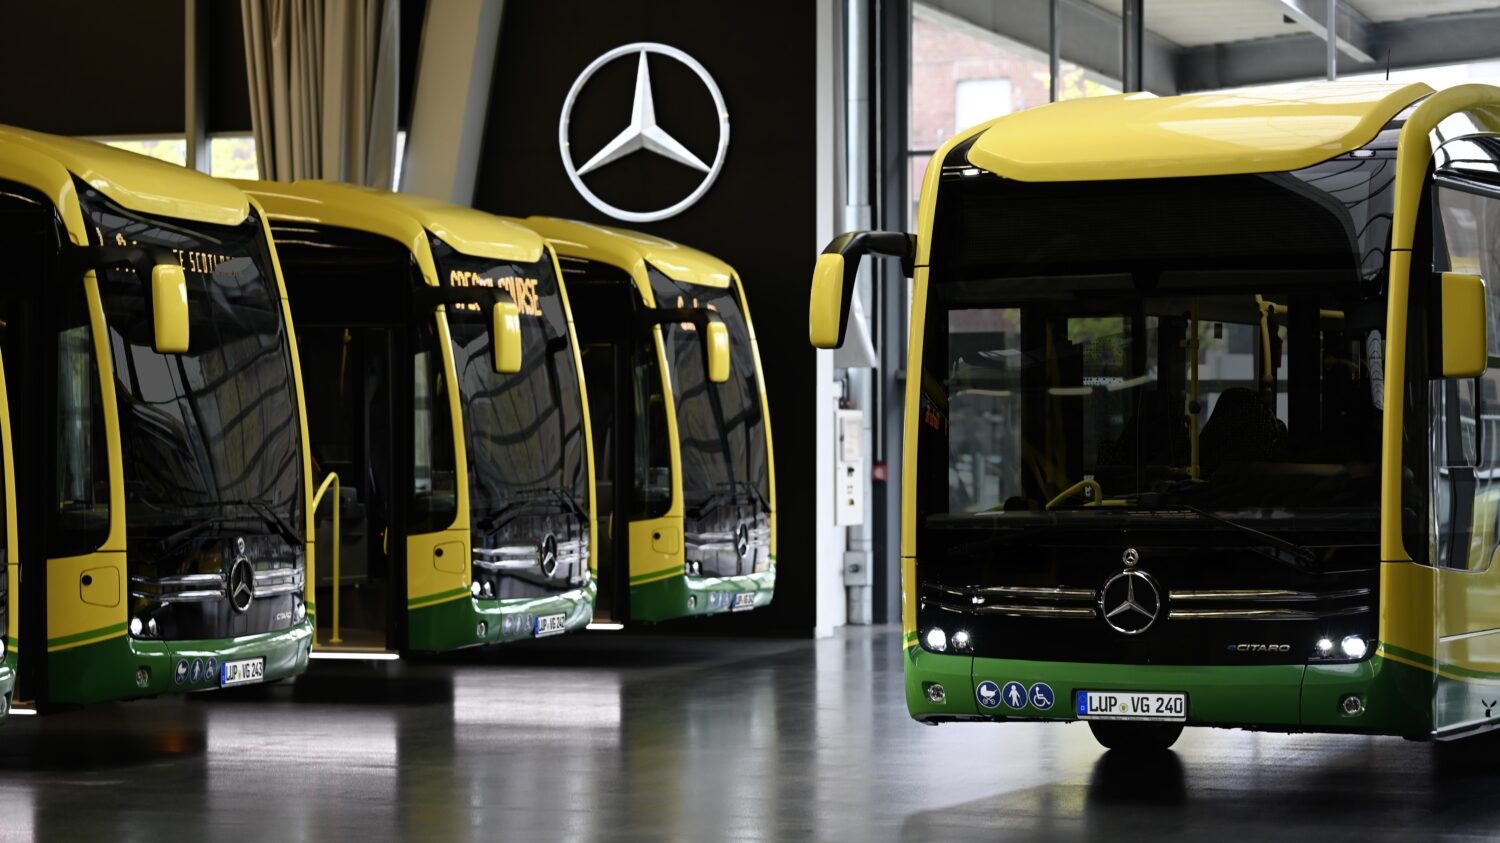 Žluto-zelených elektrobusů bylo dodáno celkem 45, většina z nich je určena pro regionální dopravu. (foto: Daimler Buses)